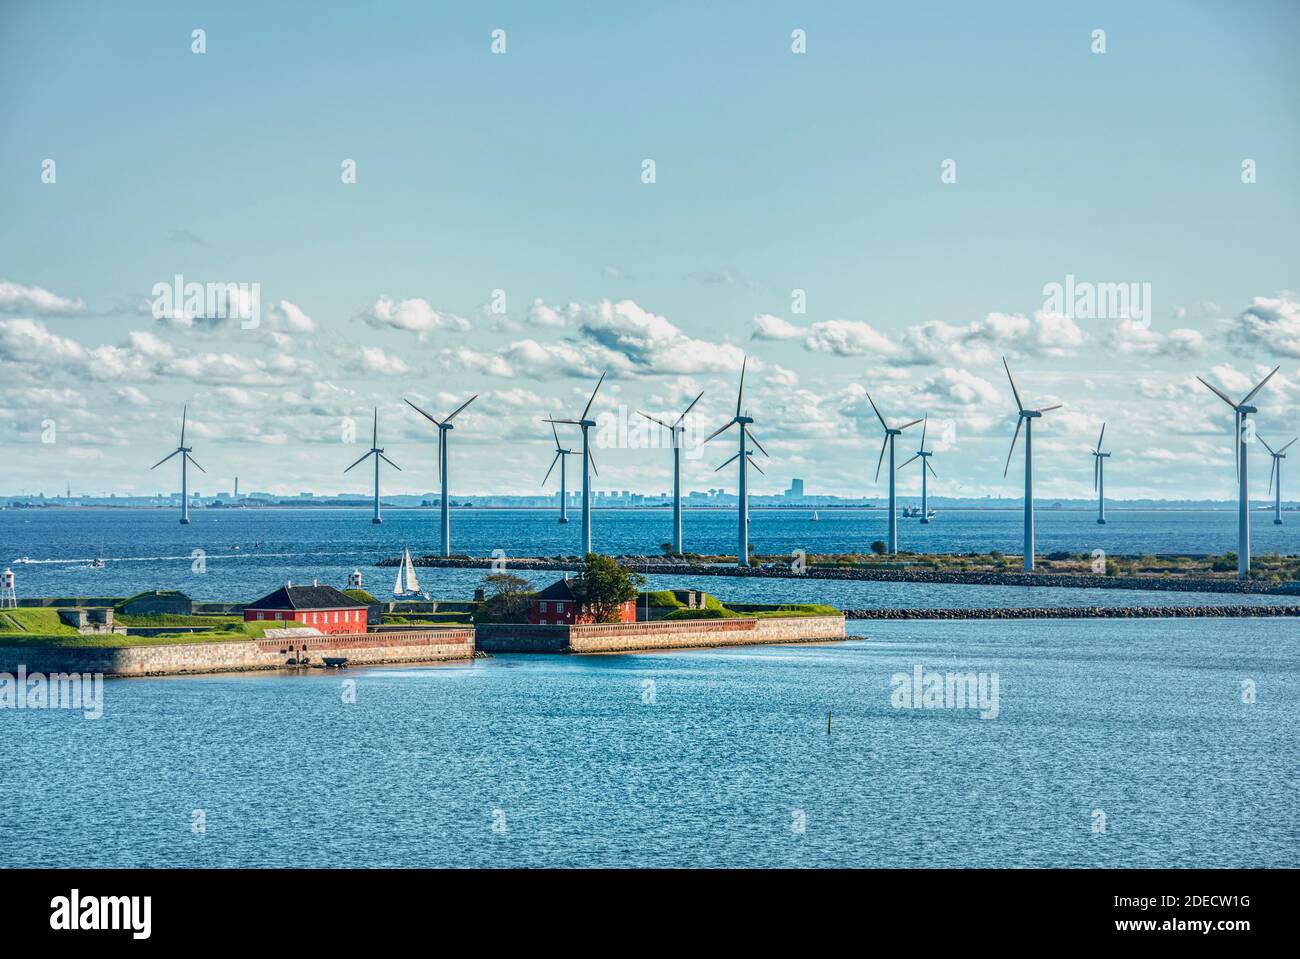 Skandinavischer dänischer Offshore-Windpark oder Windpark für grüne, umweltfreundliche Energieerzeugung. Stromerzeugung aus erneuerbaren Ressourcen Stockfoto